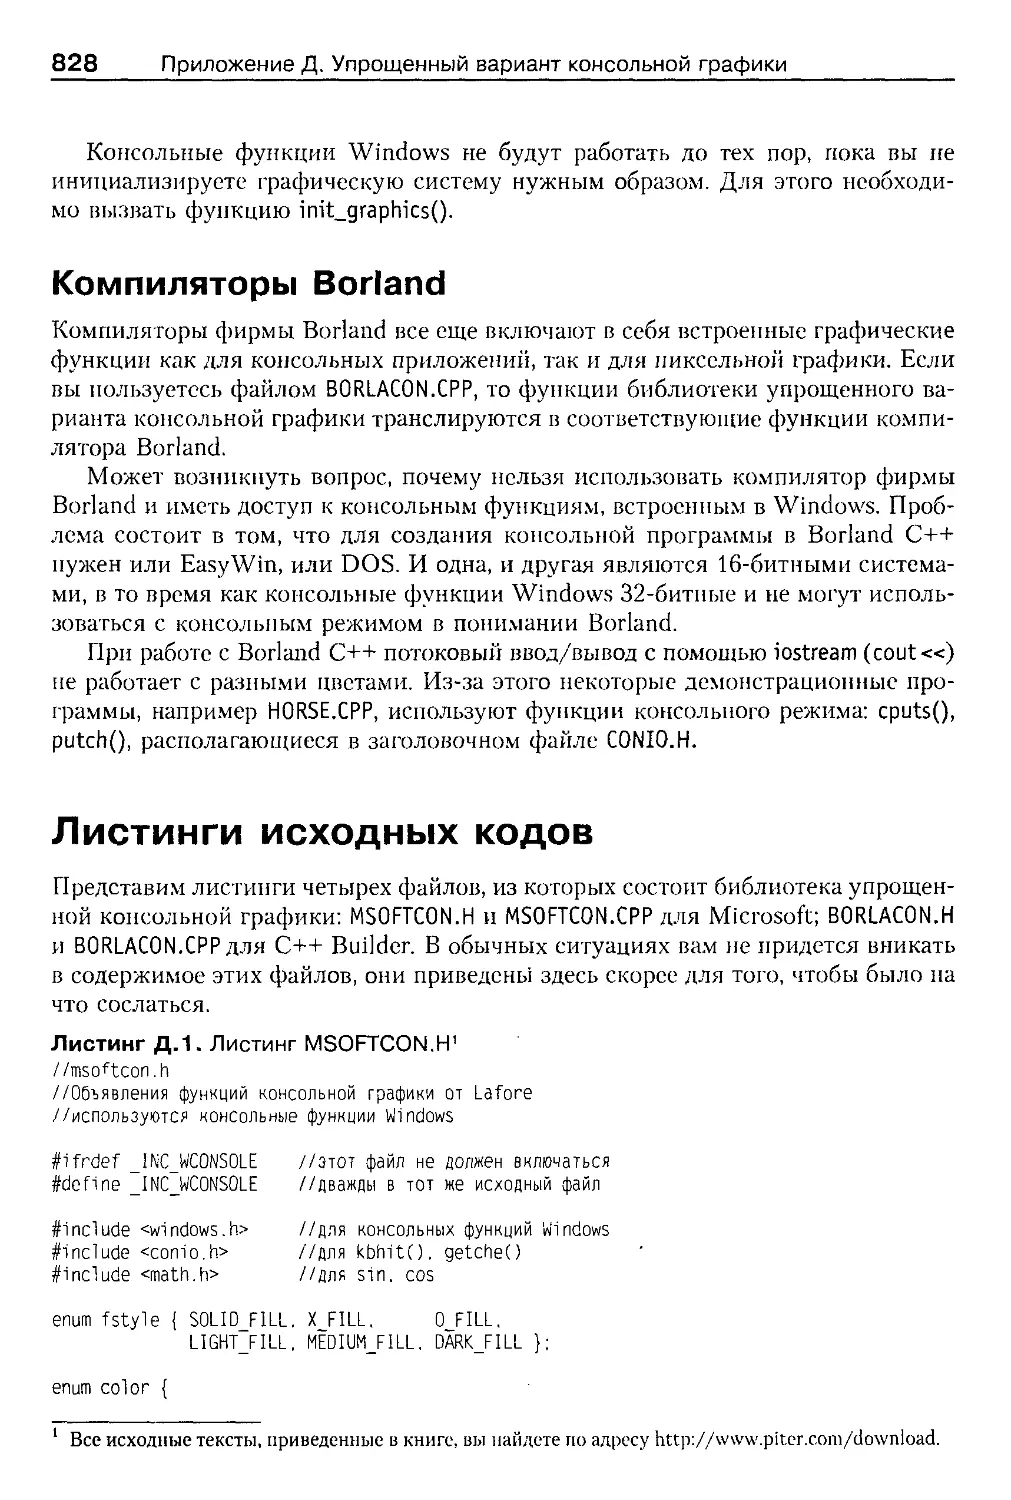 Компиляторы Borland
Листинги исходных кодов